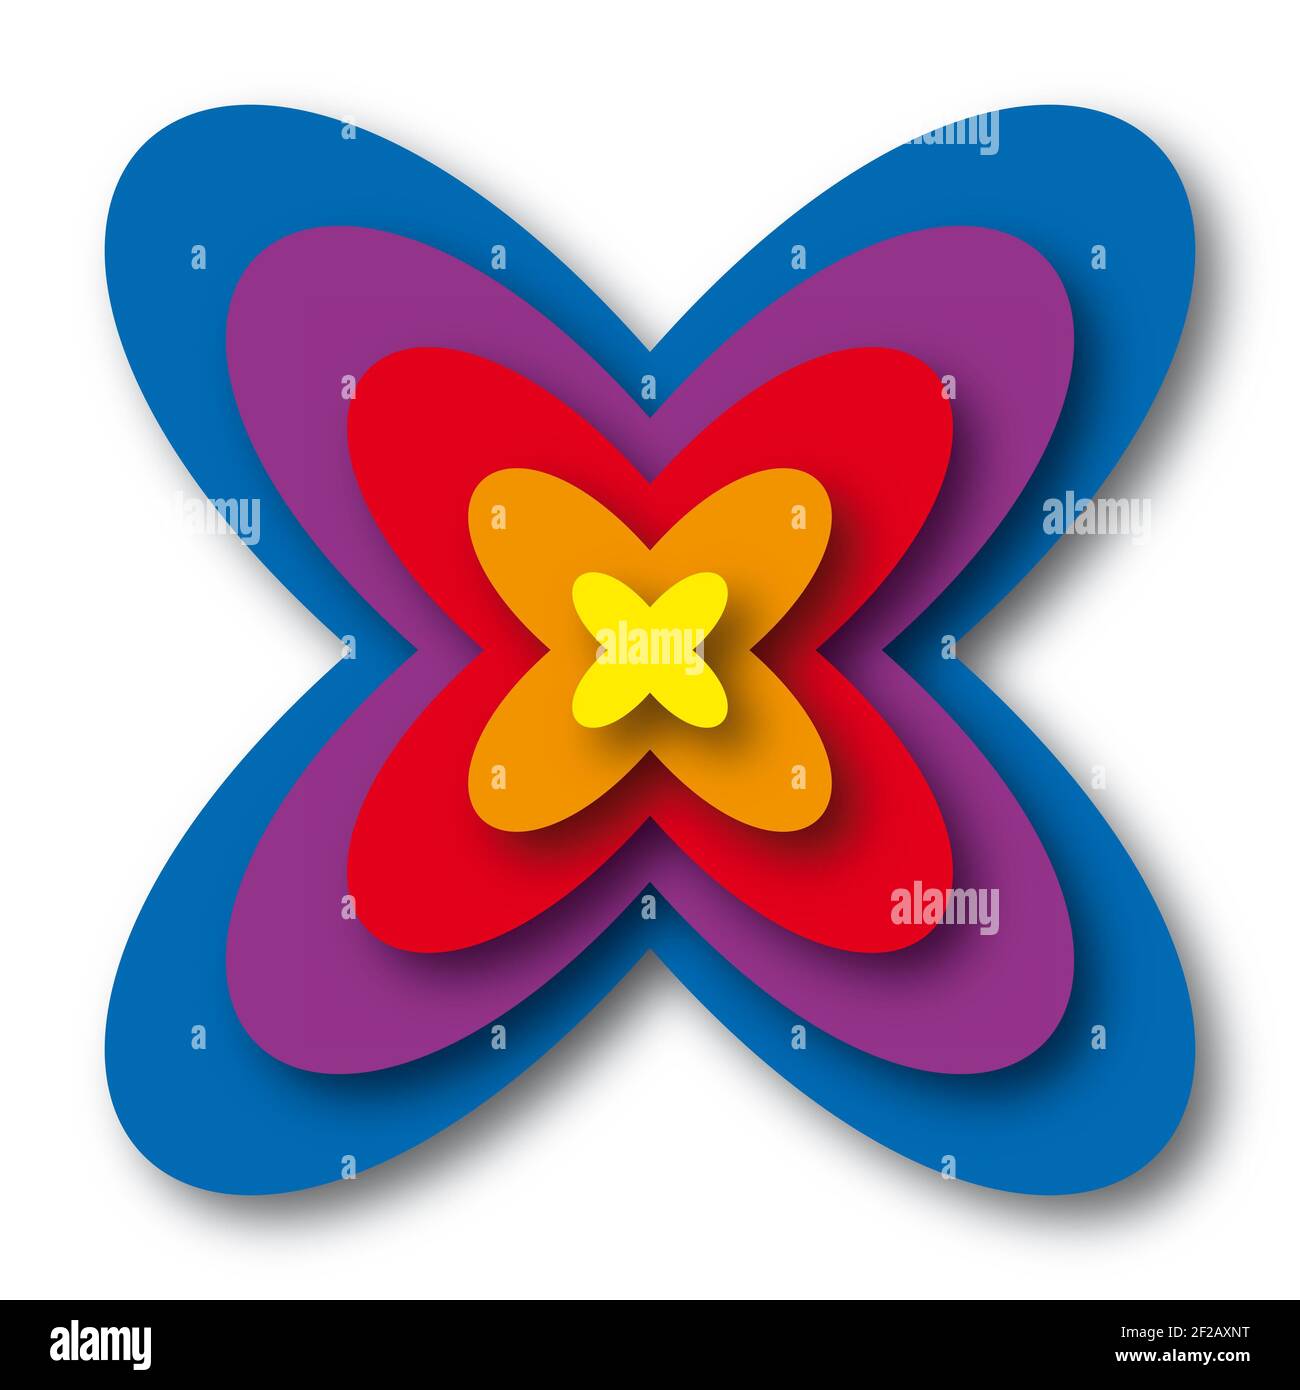 Vektor geometrische Illustration Hintergrund mit zentralem Fokus, ähnlich wie Blume. Stockfoto